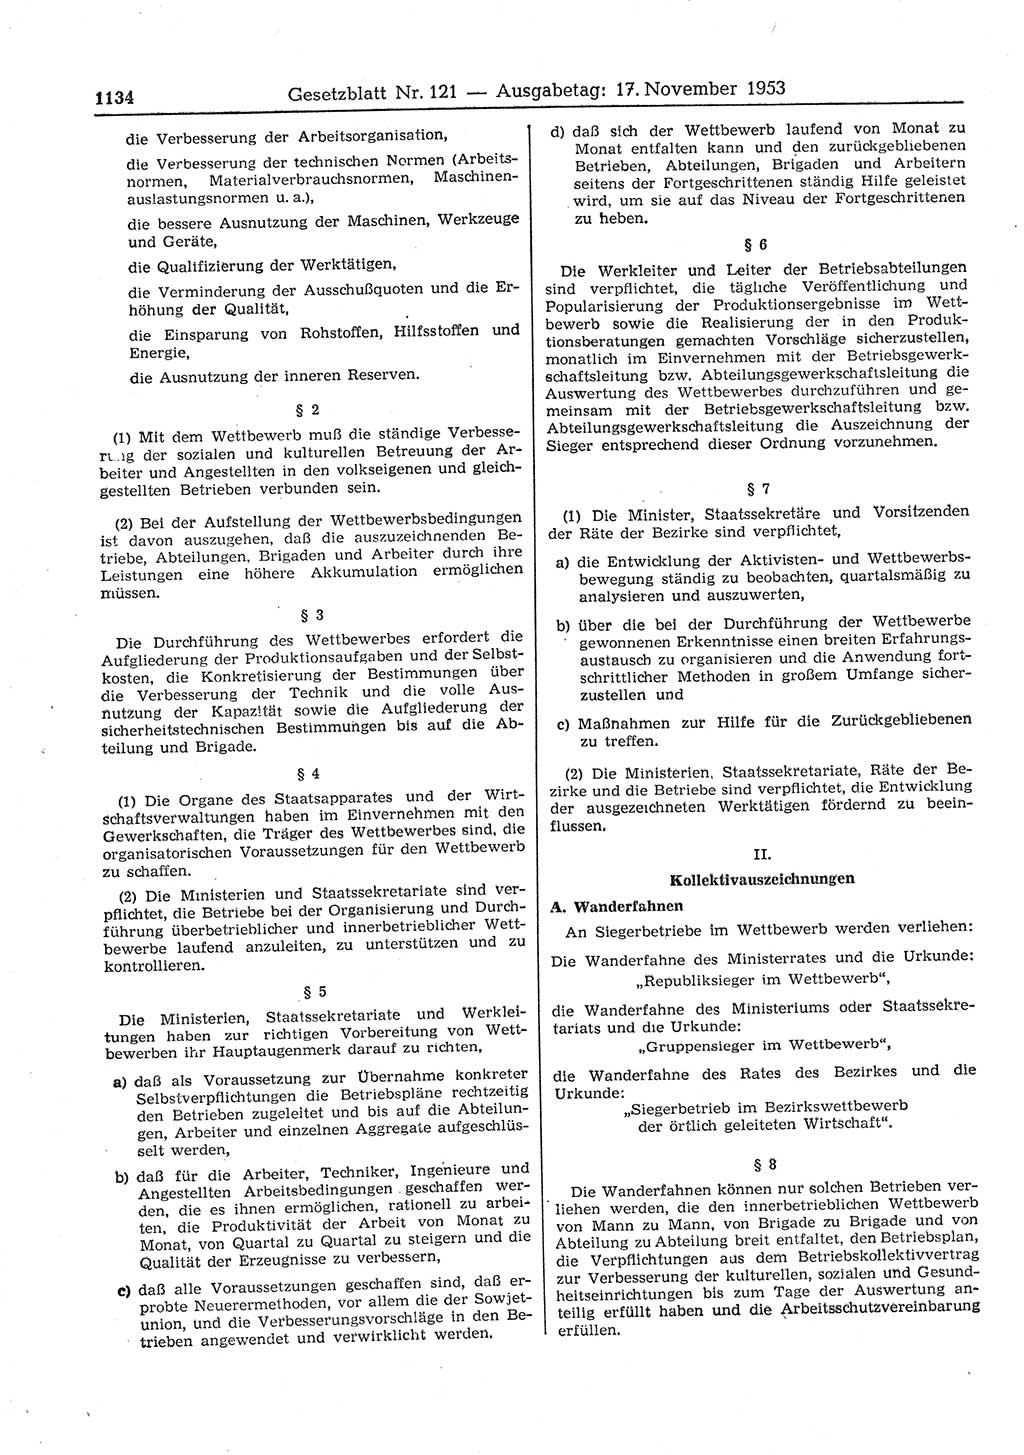 Gesetzblatt (GBl.) der Deutschen Demokratischen Republik (DDR) 1953, Seite 1134 (GBl. DDR 1953, S. 1134)